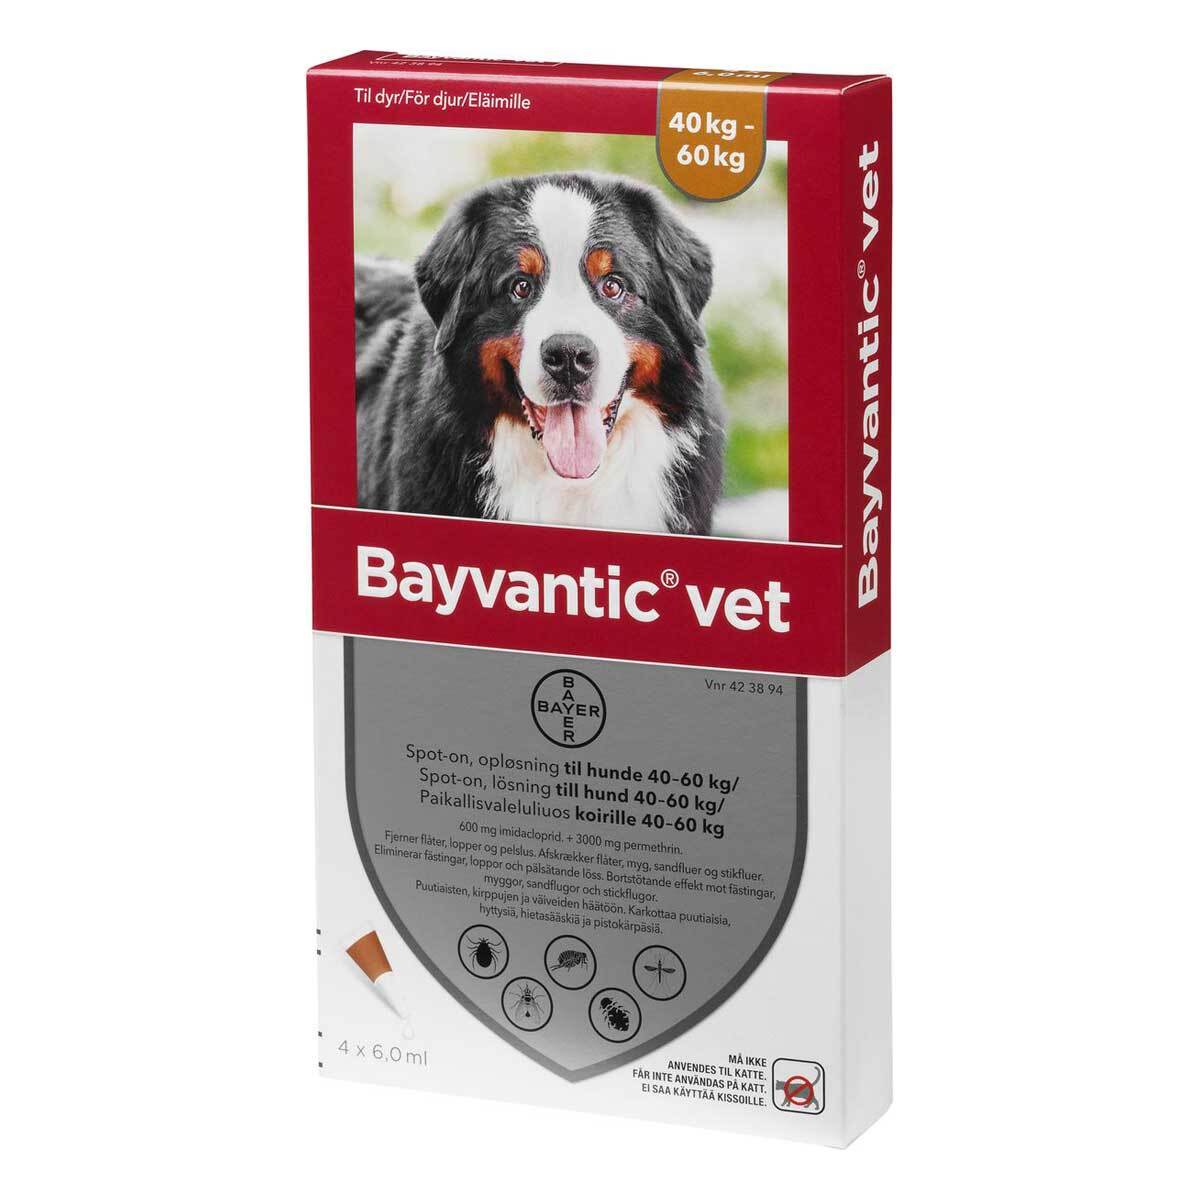 Billede af Bayvantic vet til hund 40-60kg hos Petpower.dk